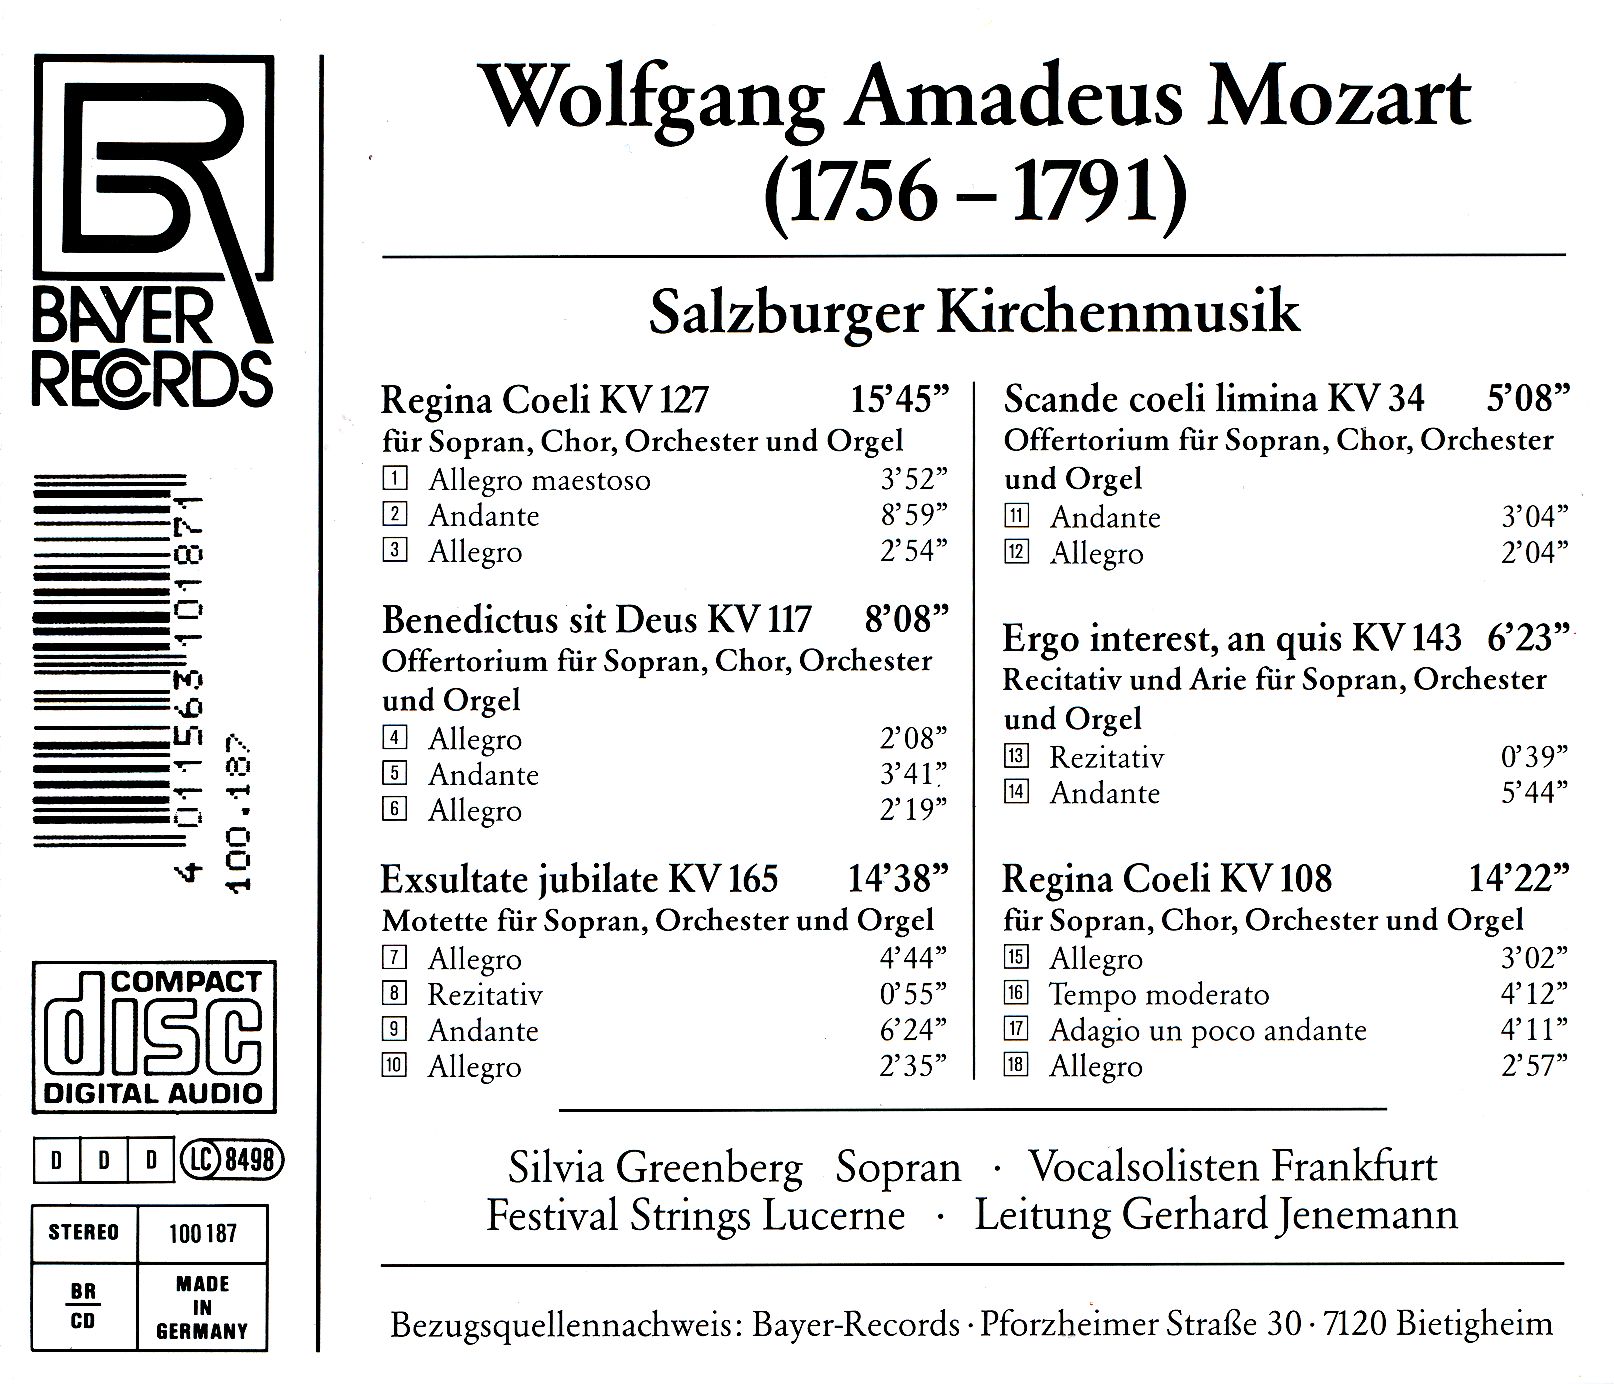 Wolfgang Amadeus Mozart - Salzburger Kirchenmusik